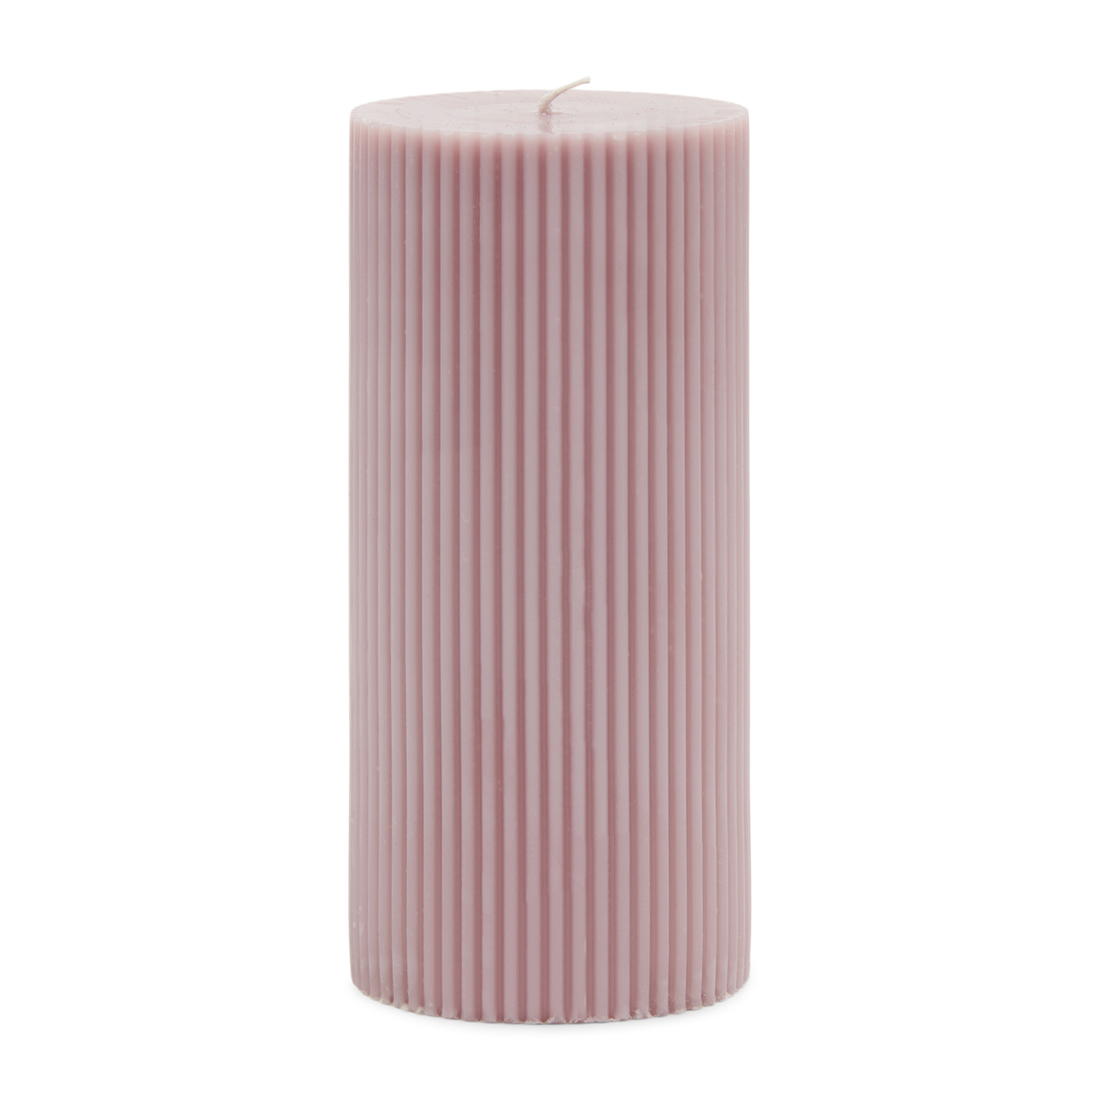 Riviera Maison Kaarsen - Stompkaarsen - Pillar Candle Rib 7x15 - Paars - 1 Stuks